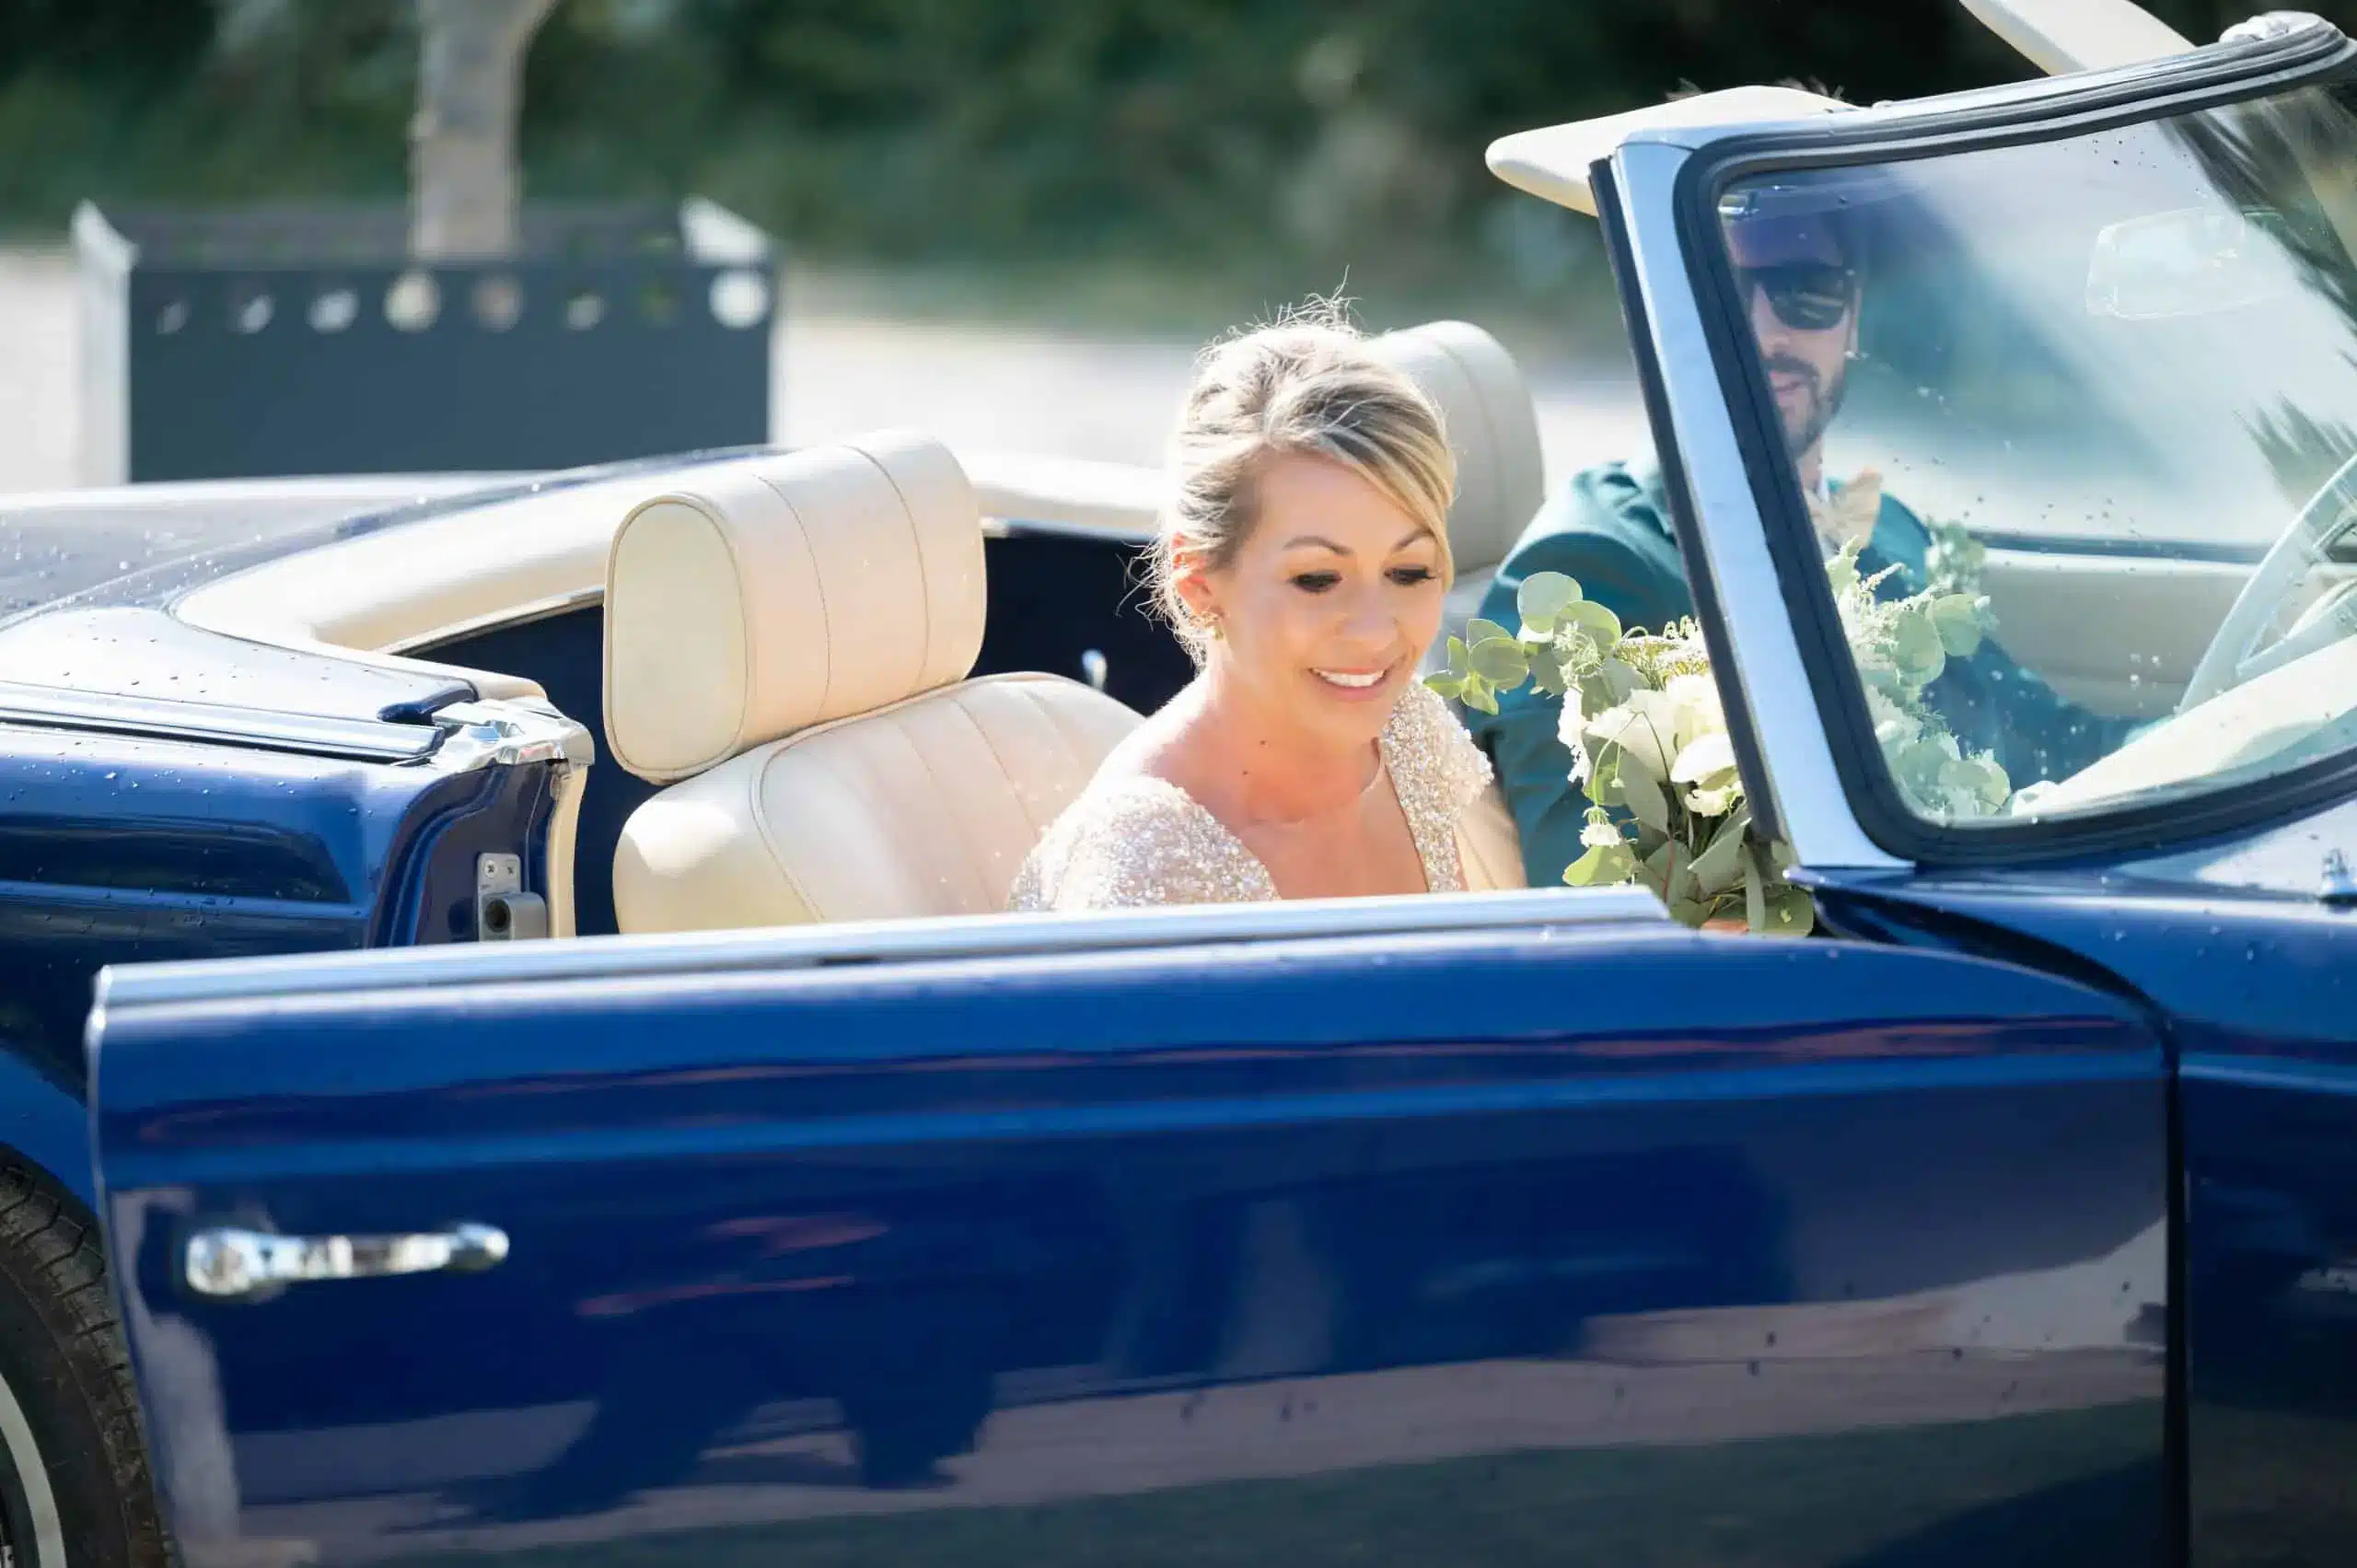 Organisateur de mariage en Camargue : les mariés rayonnent de bonheur dans une Mercedes vintage bleue, un choix parfait orchestré par leur wedding planner pour célébrer ce jour unique."